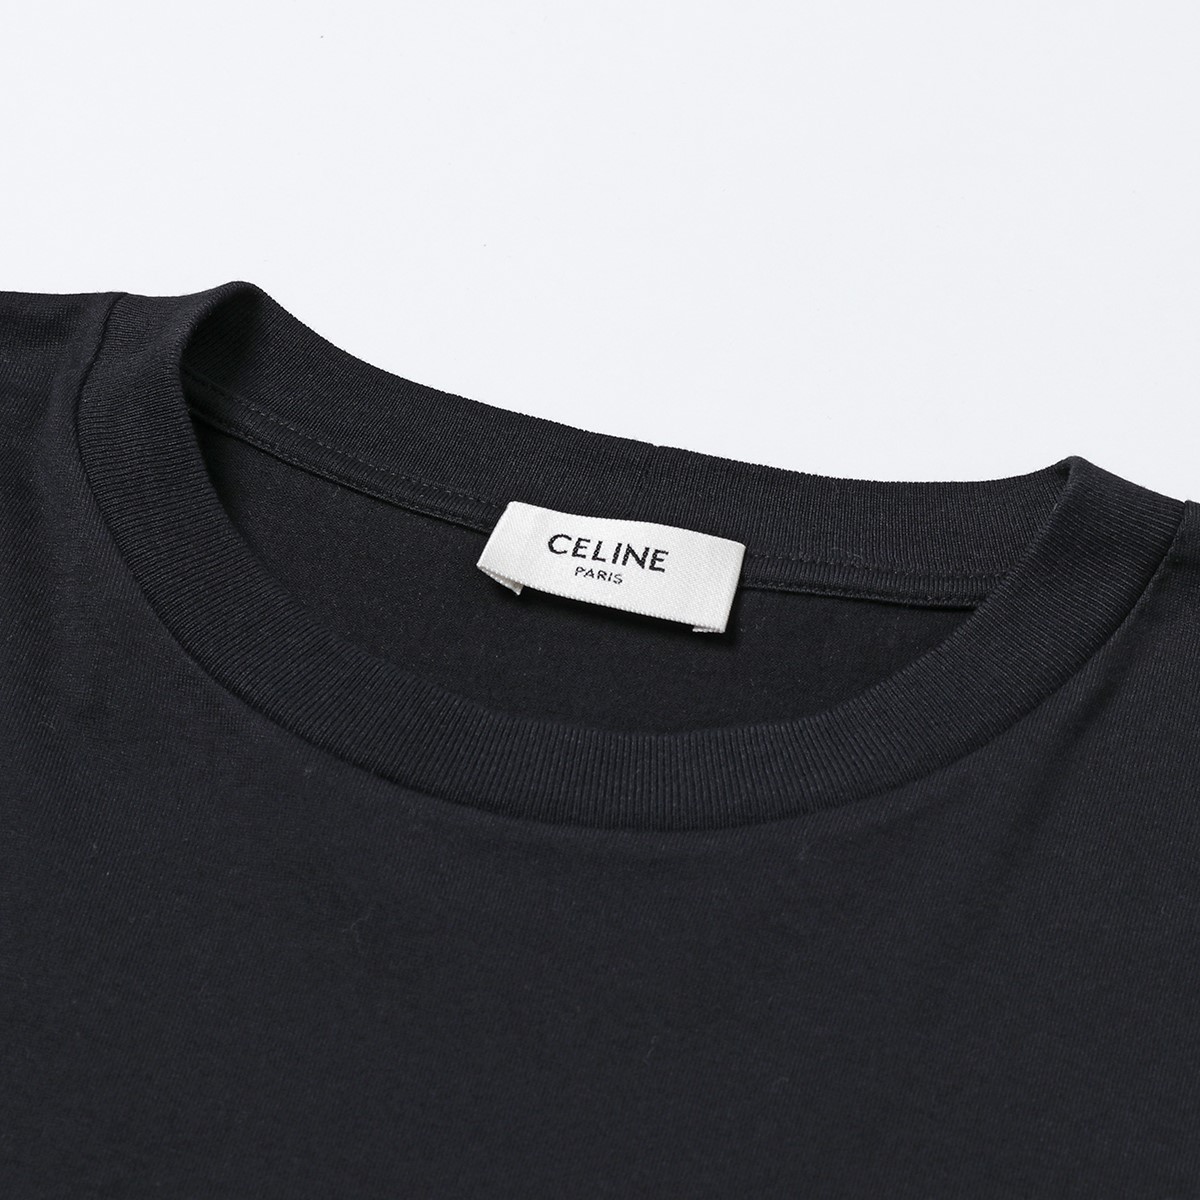 CELINE セリーヌ 2X681 501F ルーズ Tシャツ 半袖 ロゴT コットン クルーネック オーバーサイズ 38AW メンズ |  インポートセレクト musee